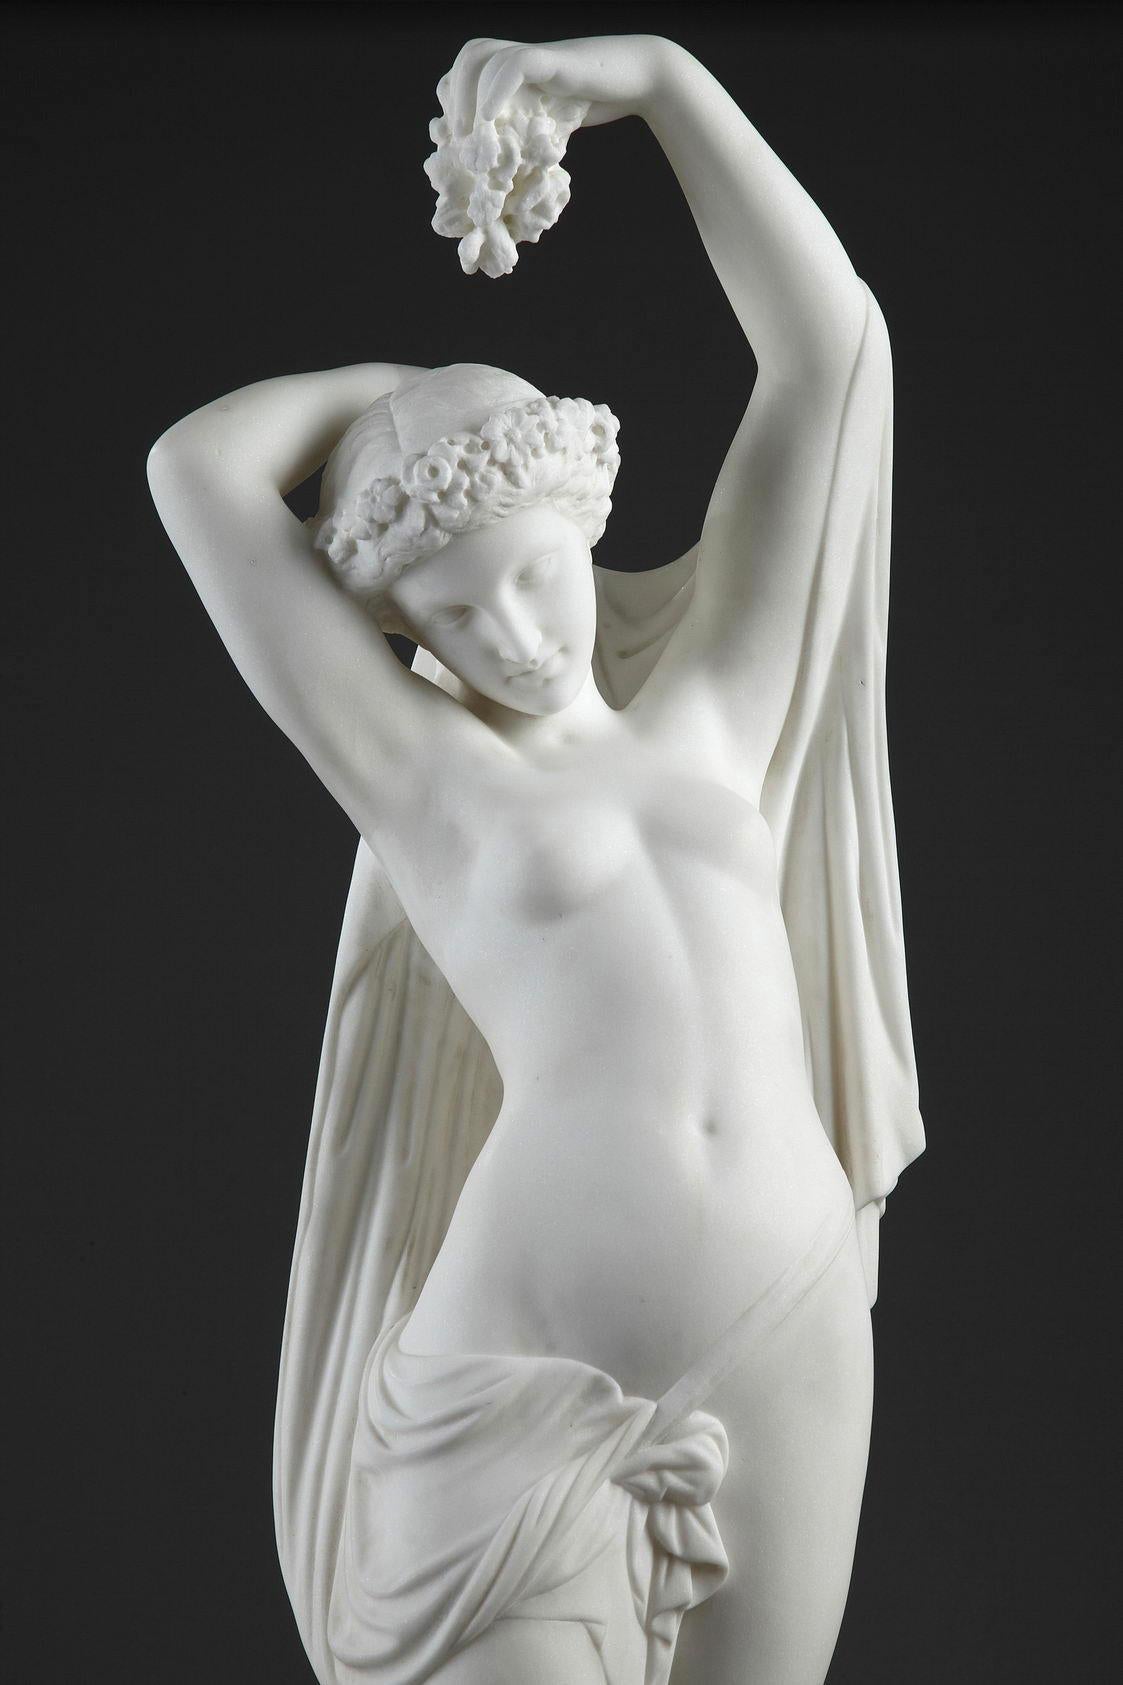 Daytime, marble sculpture - Sculpture by James Pradier